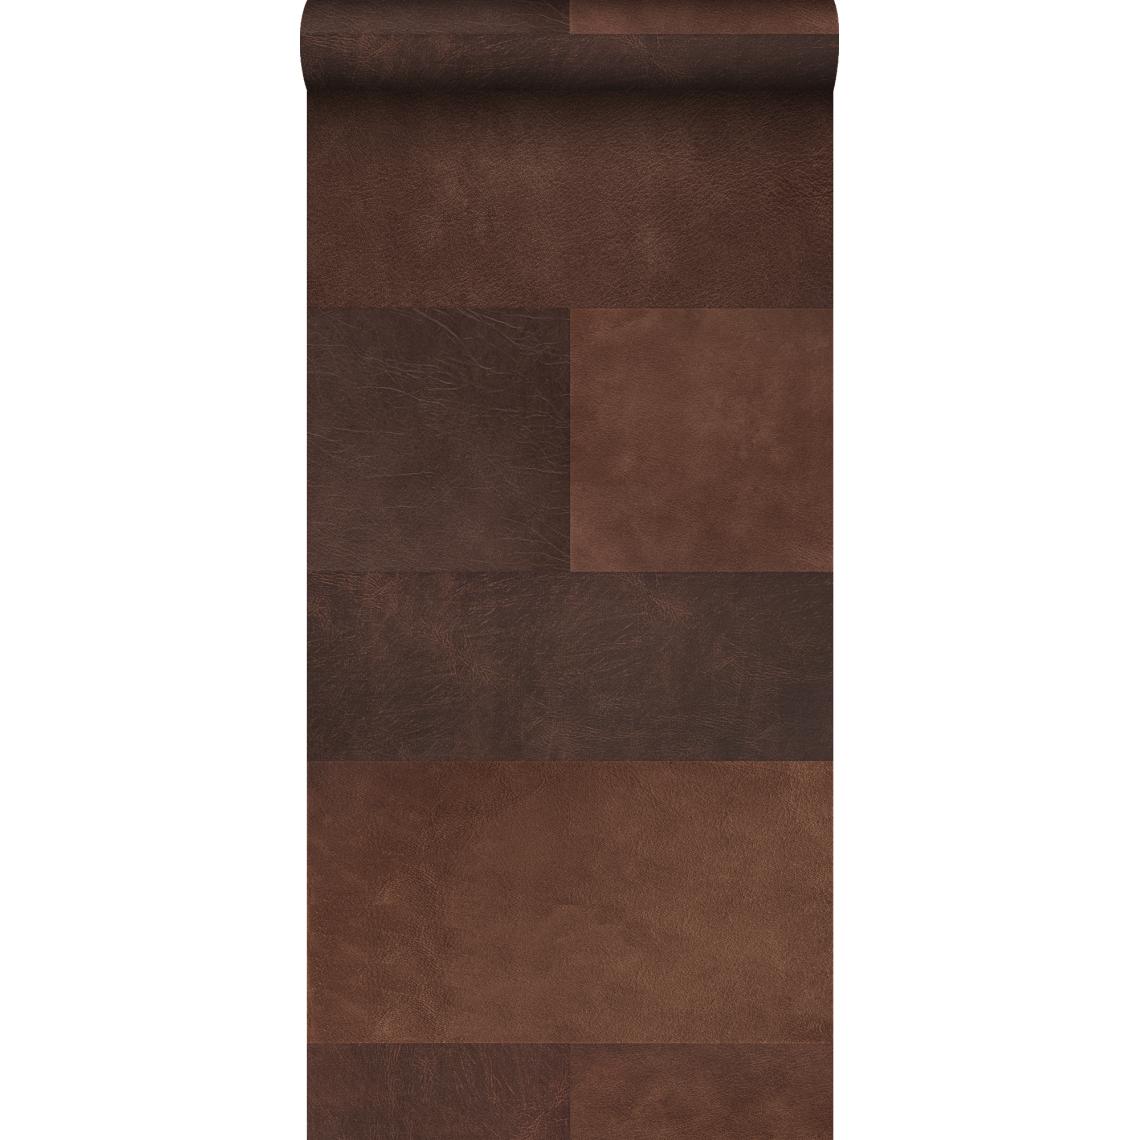 Origin - Origin papier peint intissé XXL motif de carrellages avec imitation cuir marron - 357237 - 0.5 x 8.37 m - Papier peint